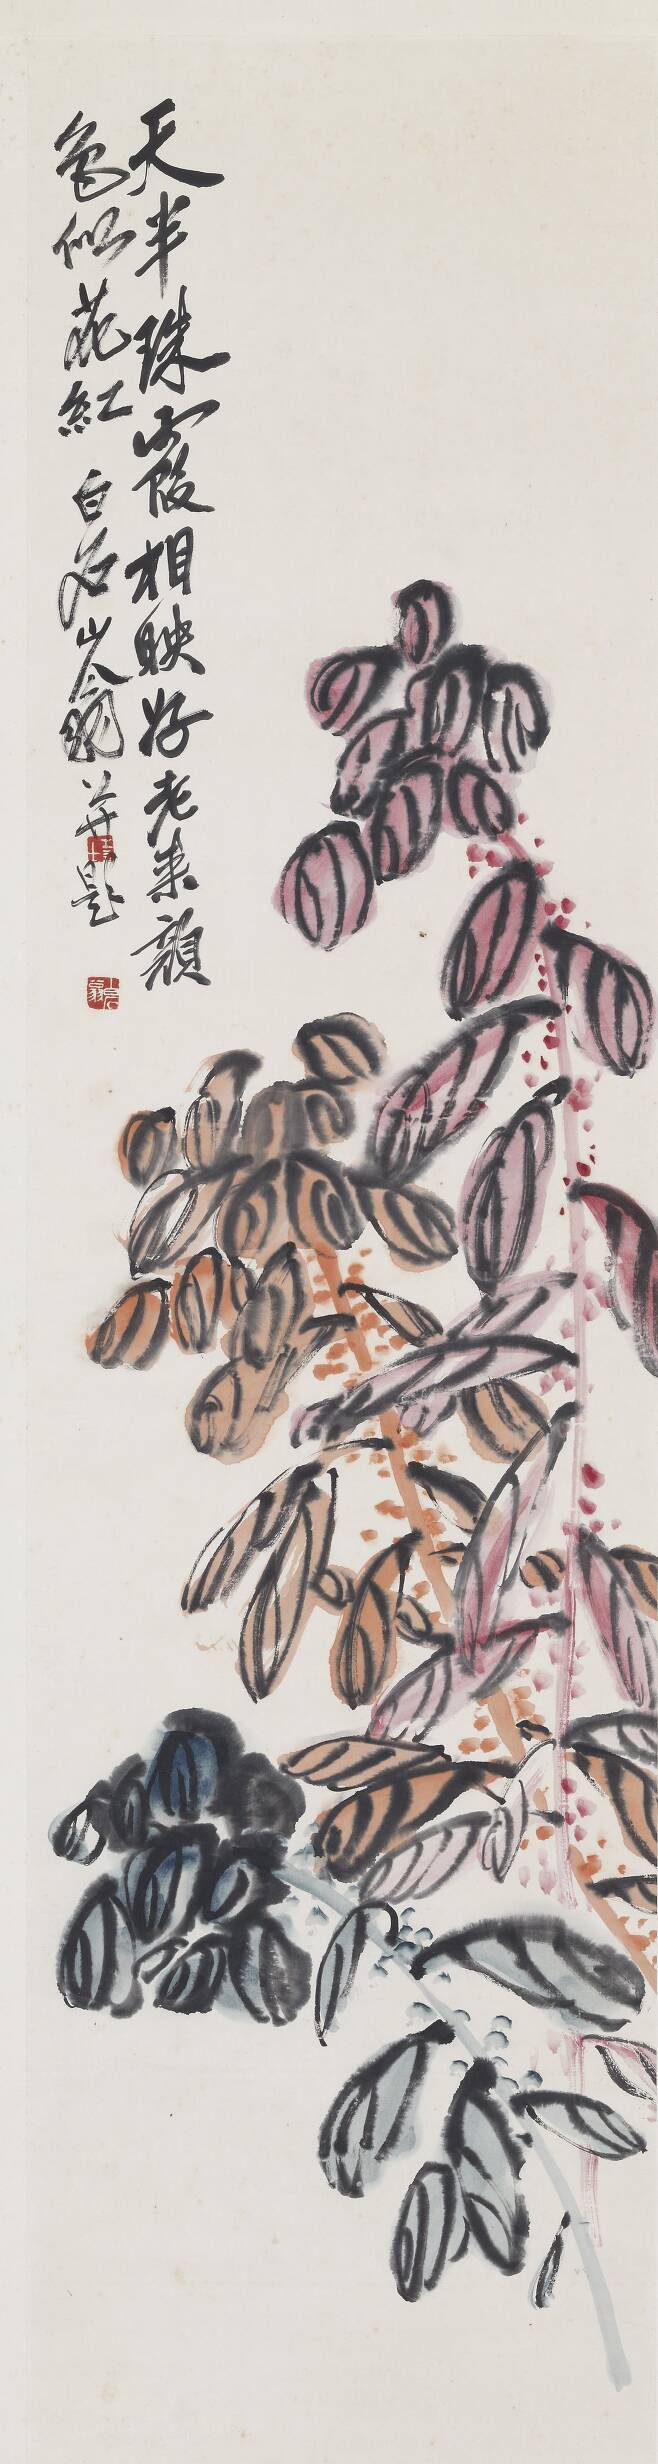 '서세옥 컬렉션'에 포함된 중국 화가 치바이스의 수묵담채(134x34.5cm). /성북구립미술관